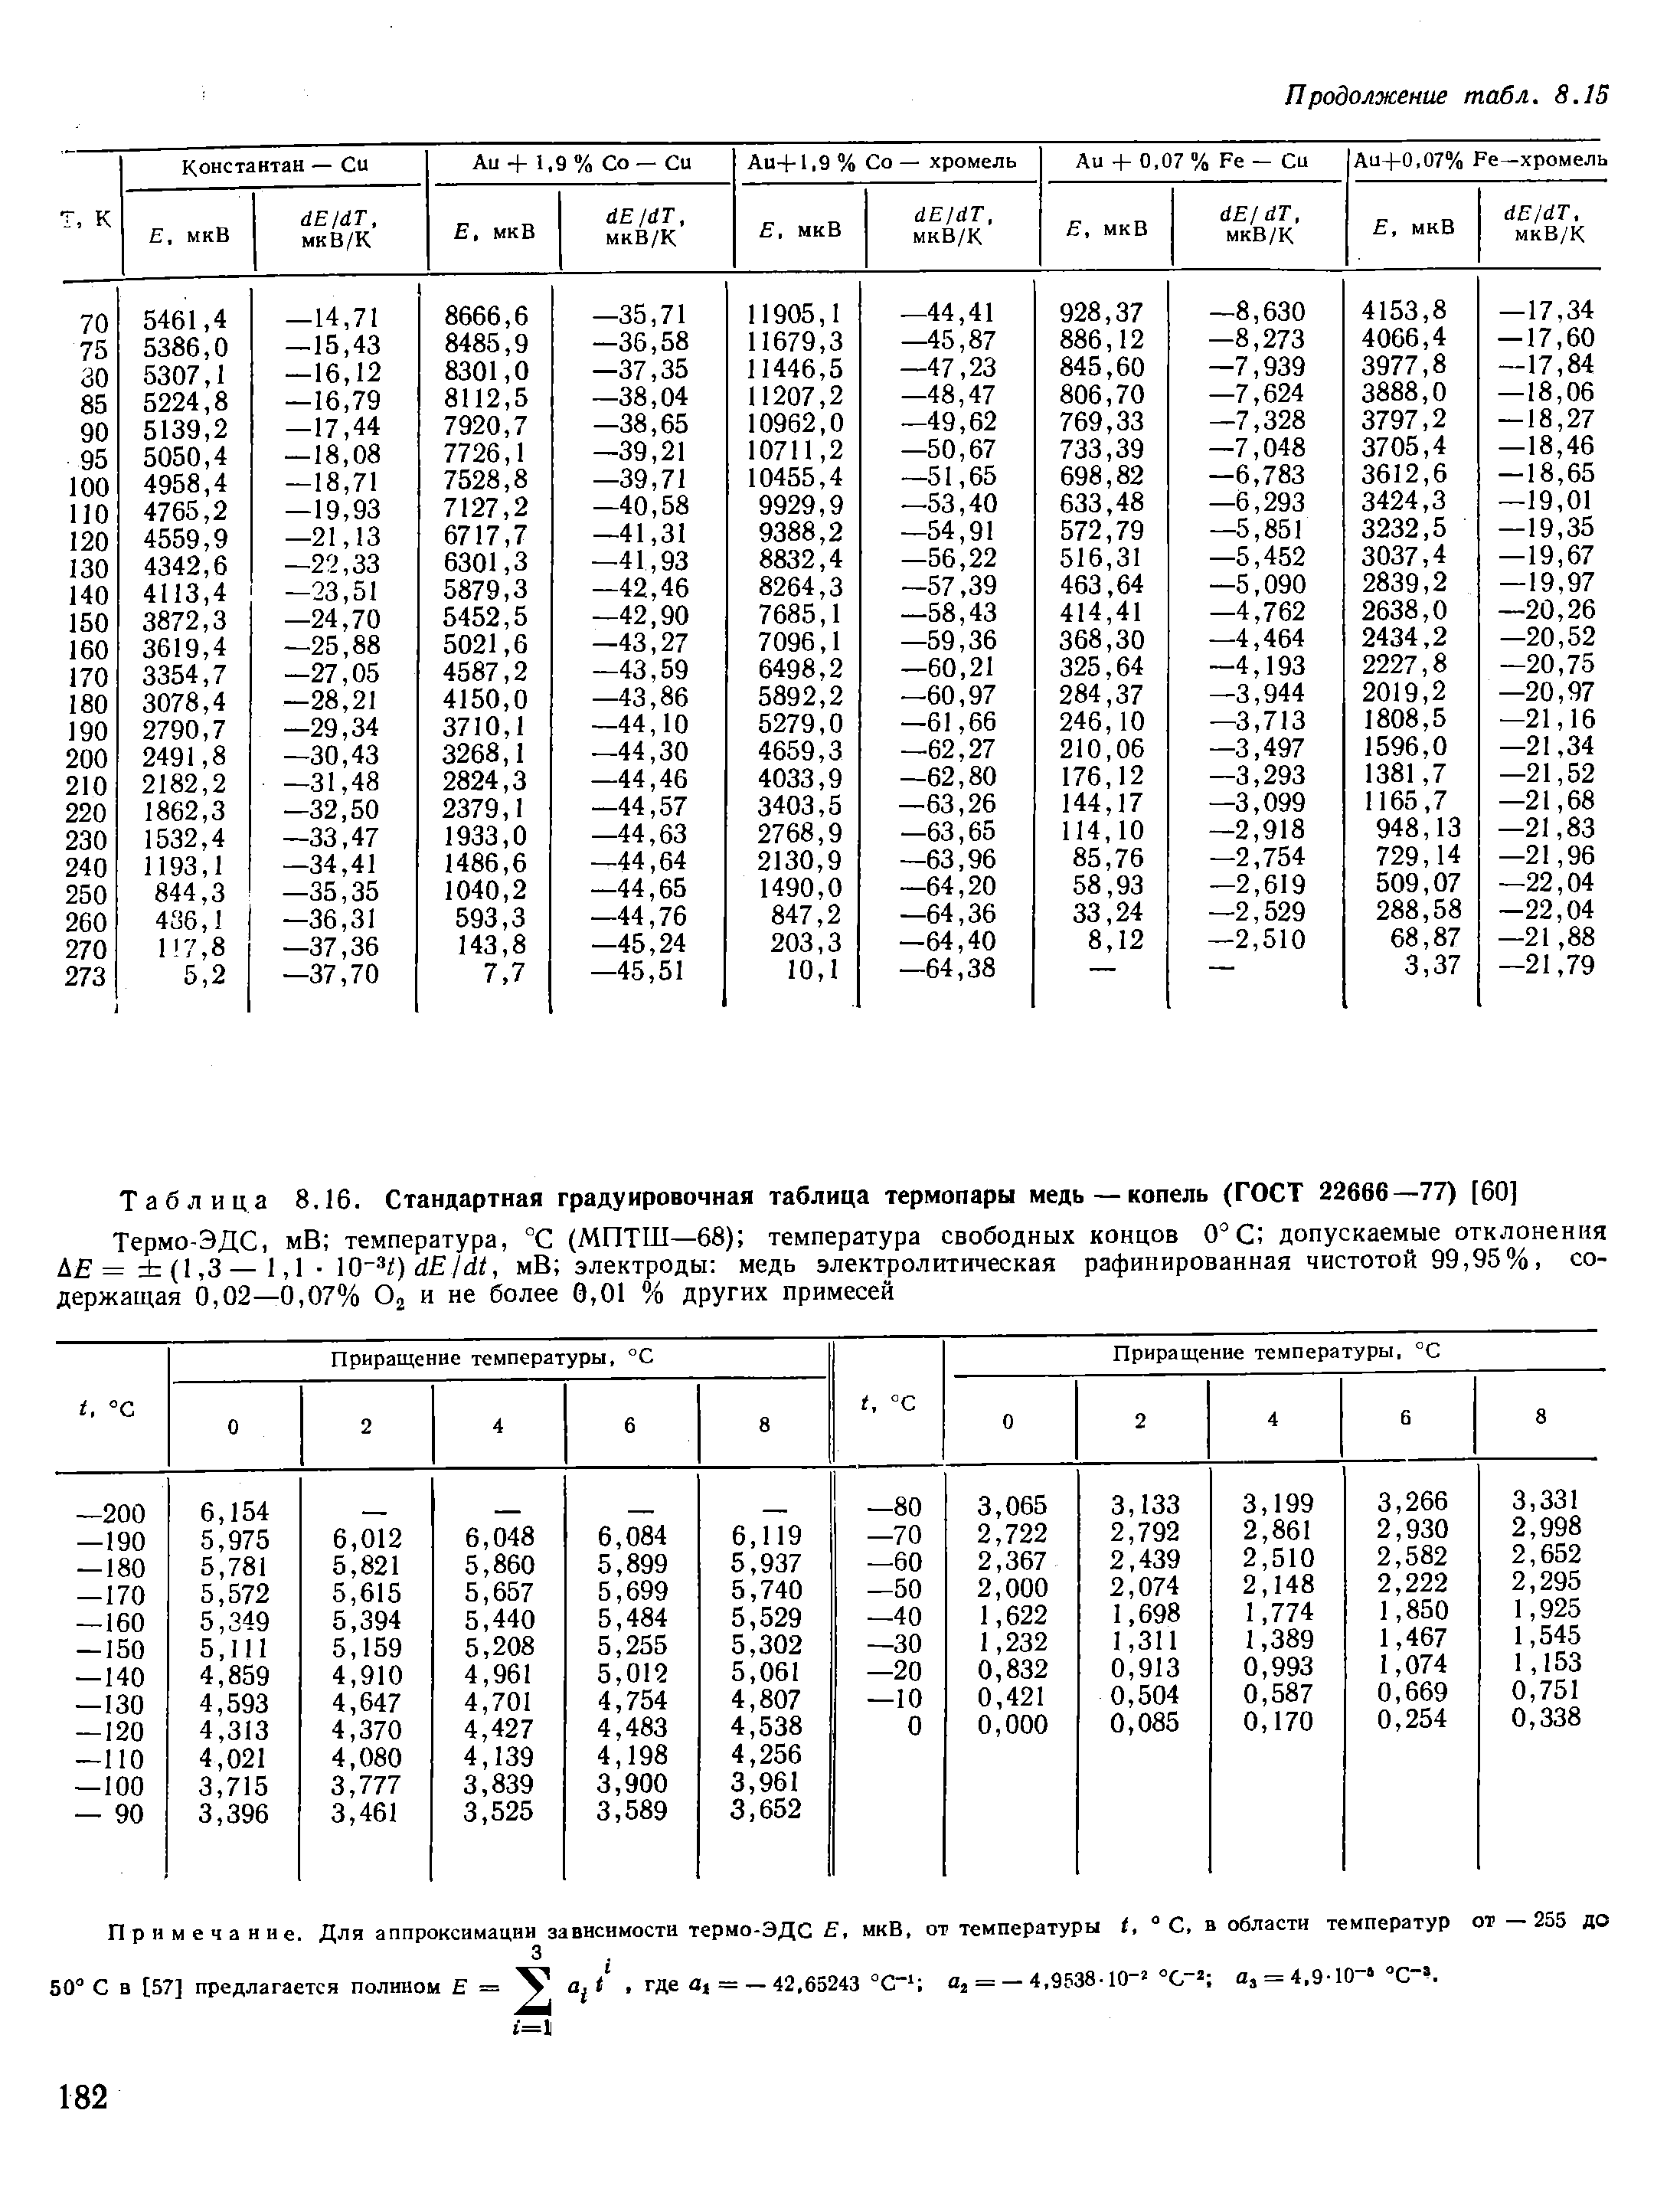 Таблица 8.16. Стандартная градуировочная таблица термопары медь—копель (ГОСТ 22666—77) [60]
